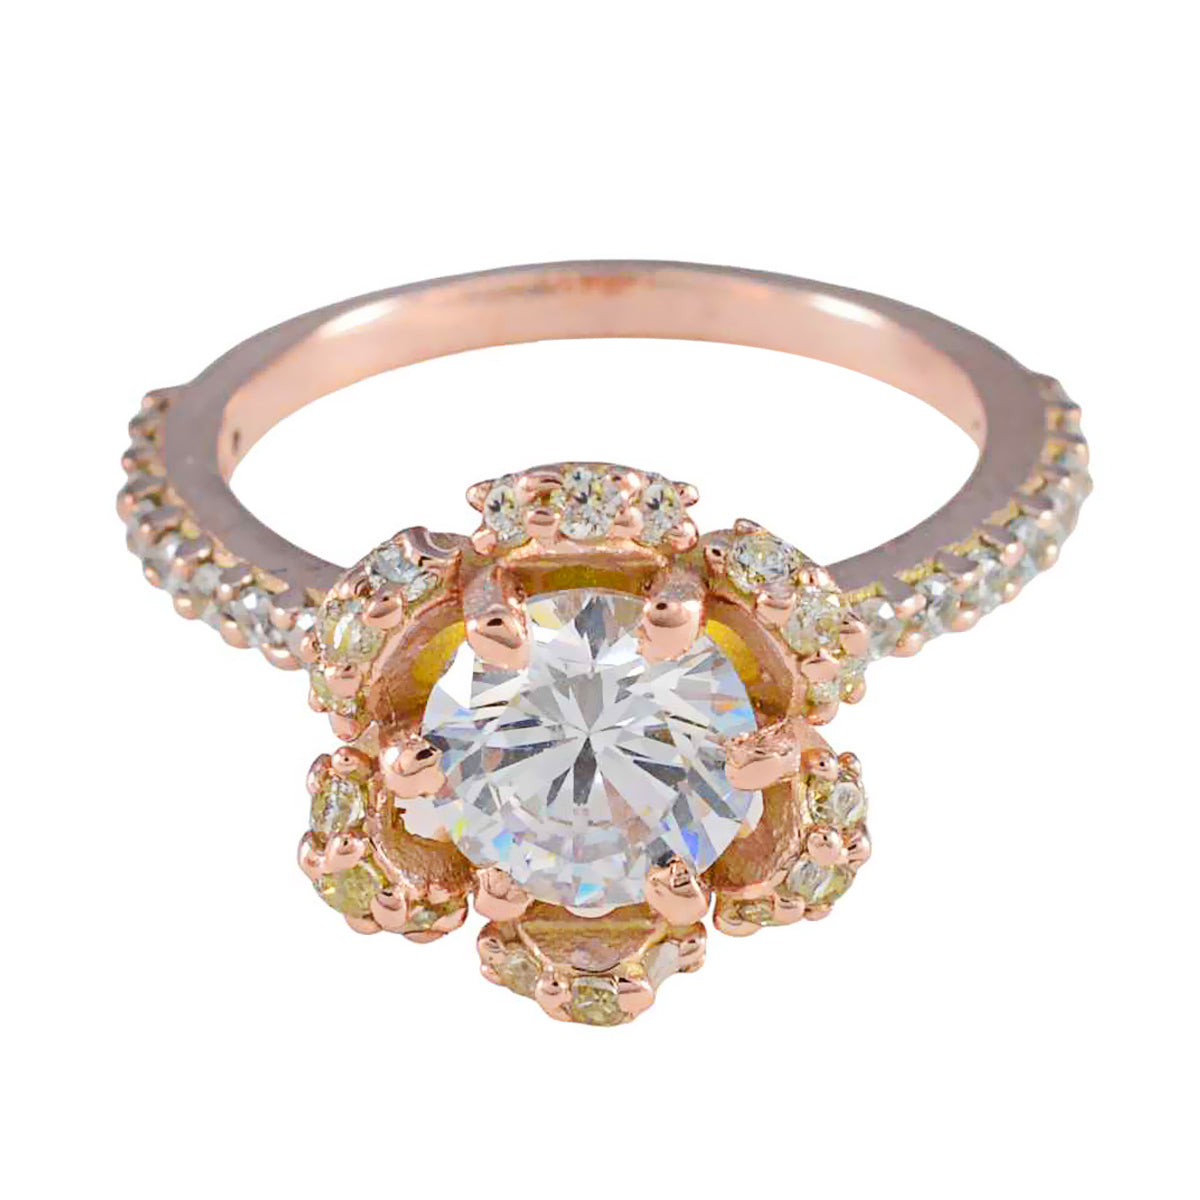 Riyo 美しいシルバーリングローズゴールドメッキホワイト cz ストーンラウンド形状プロングセッティングファッションジュエリー結婚指輪